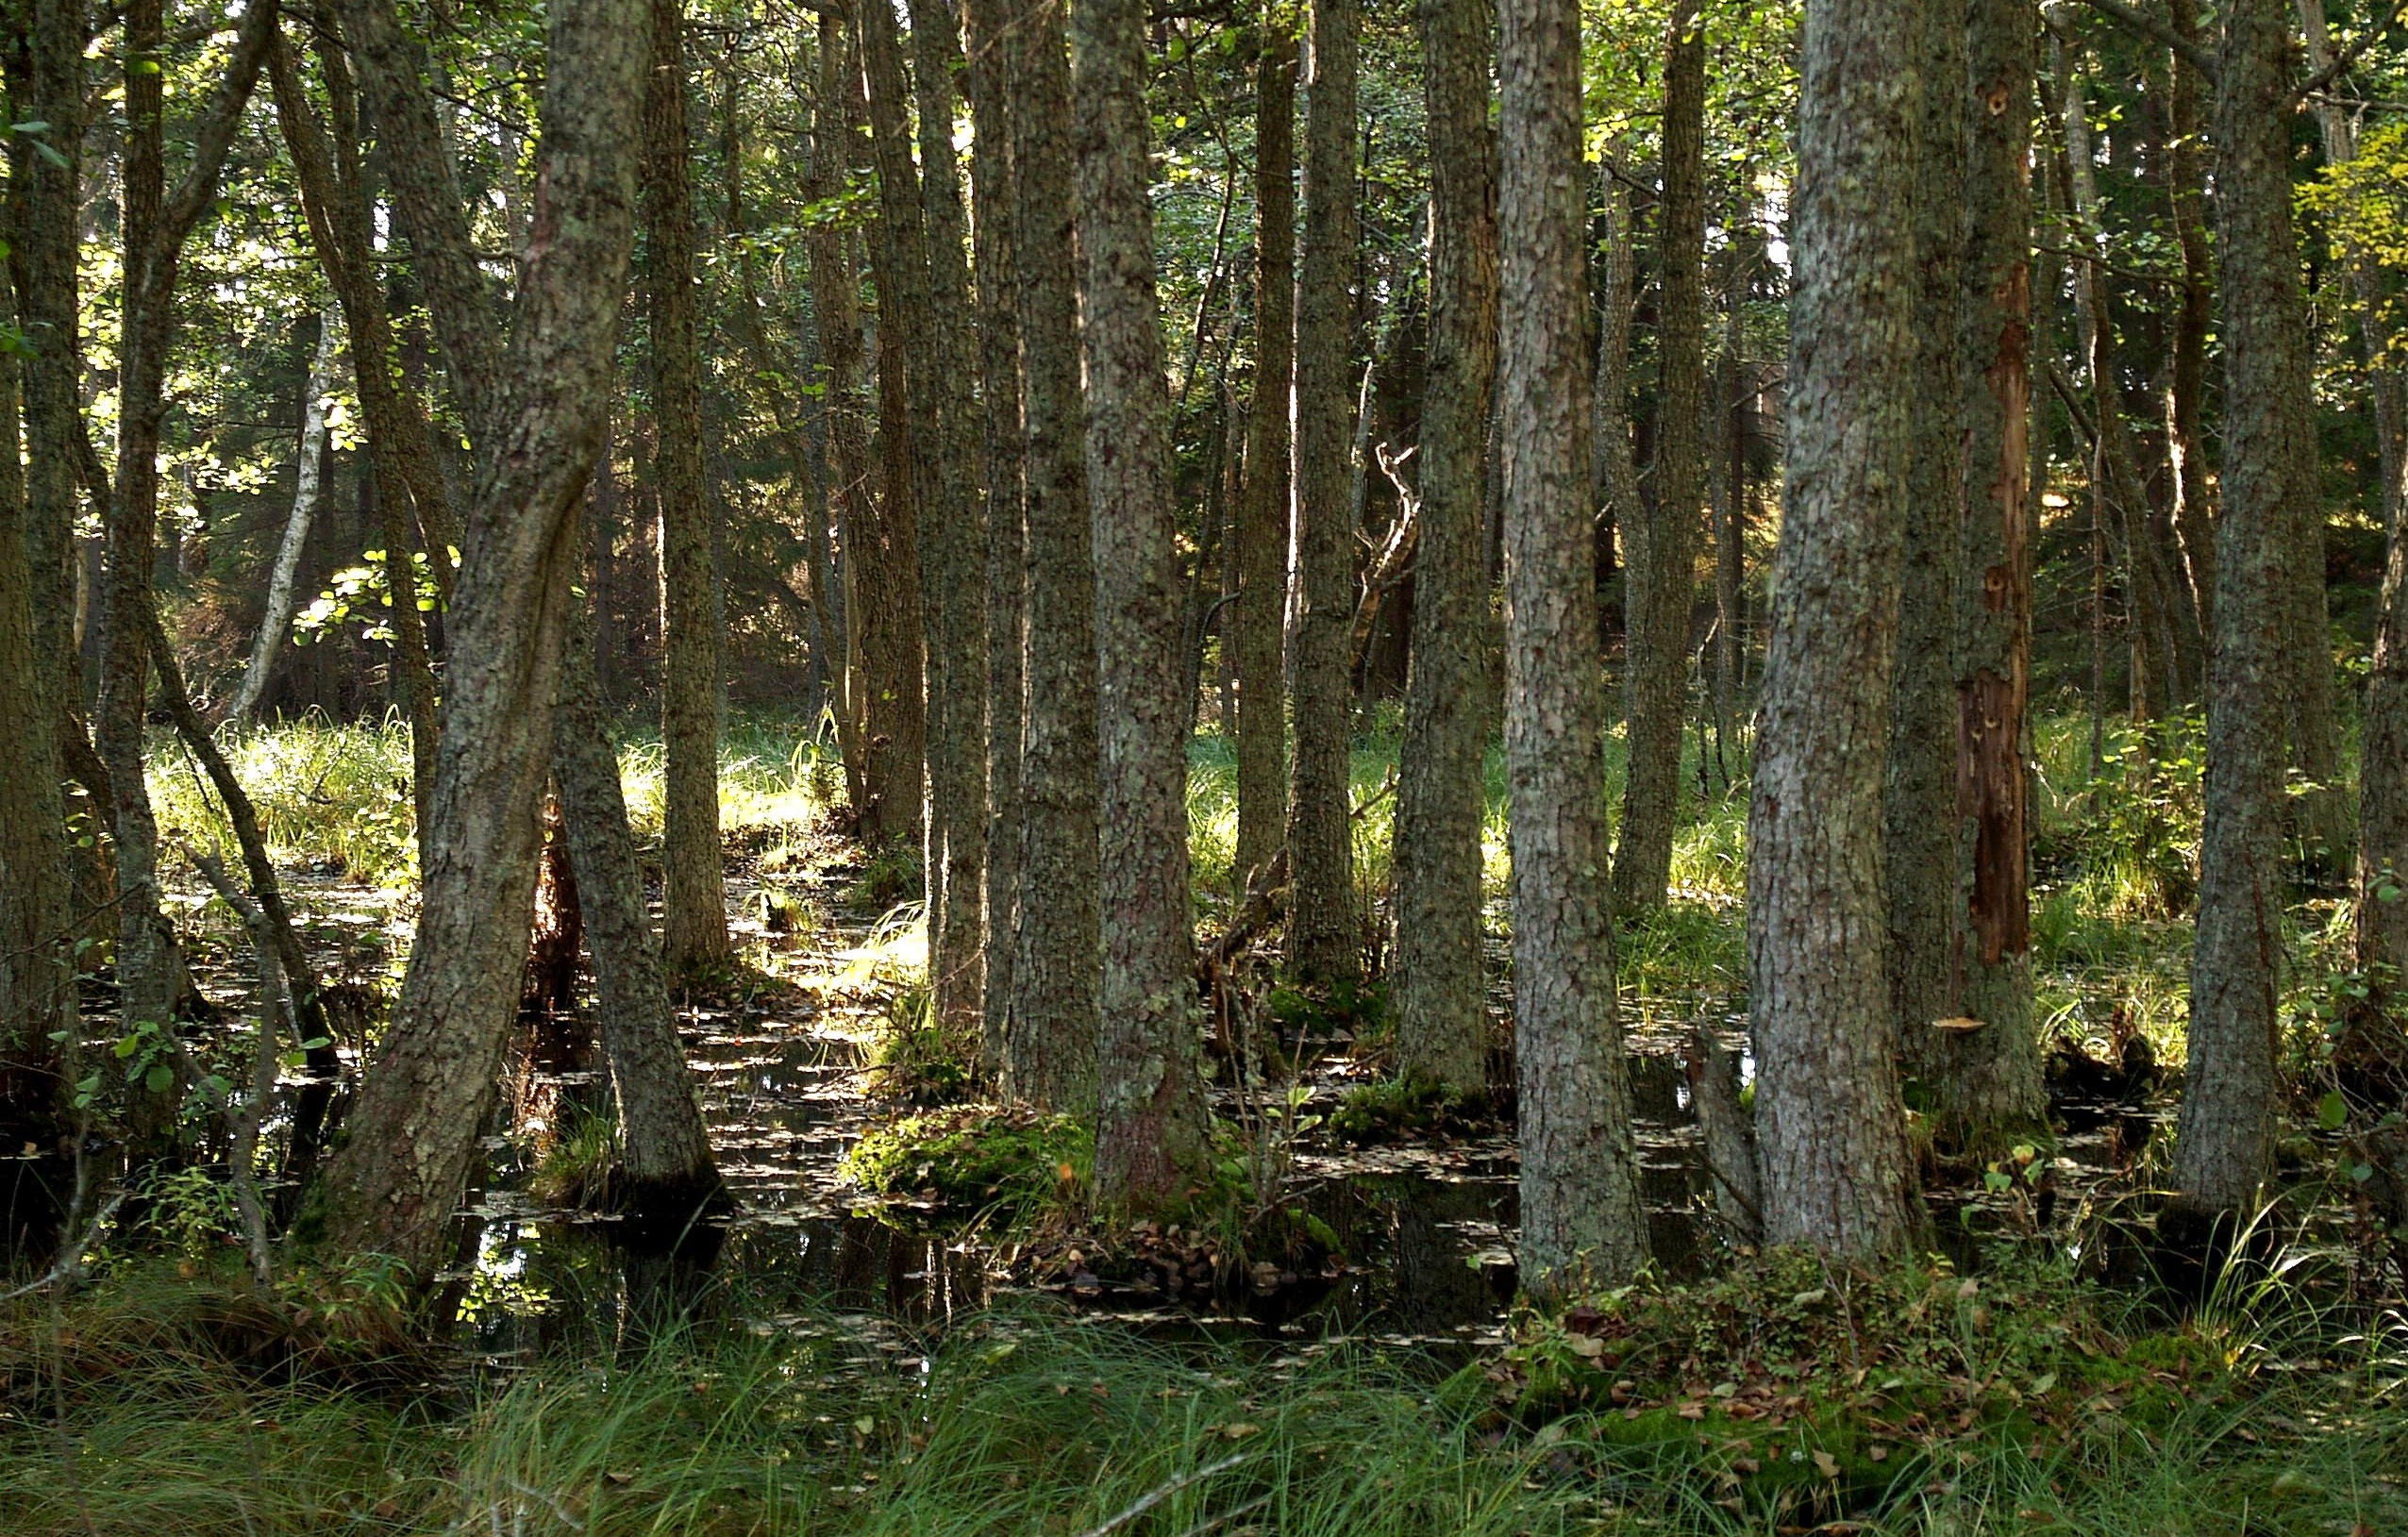 Vanhoja tervaleppiä. Puiden kasvualusta osin veden peitossa, puiden juurella kuivemmat mättäät.